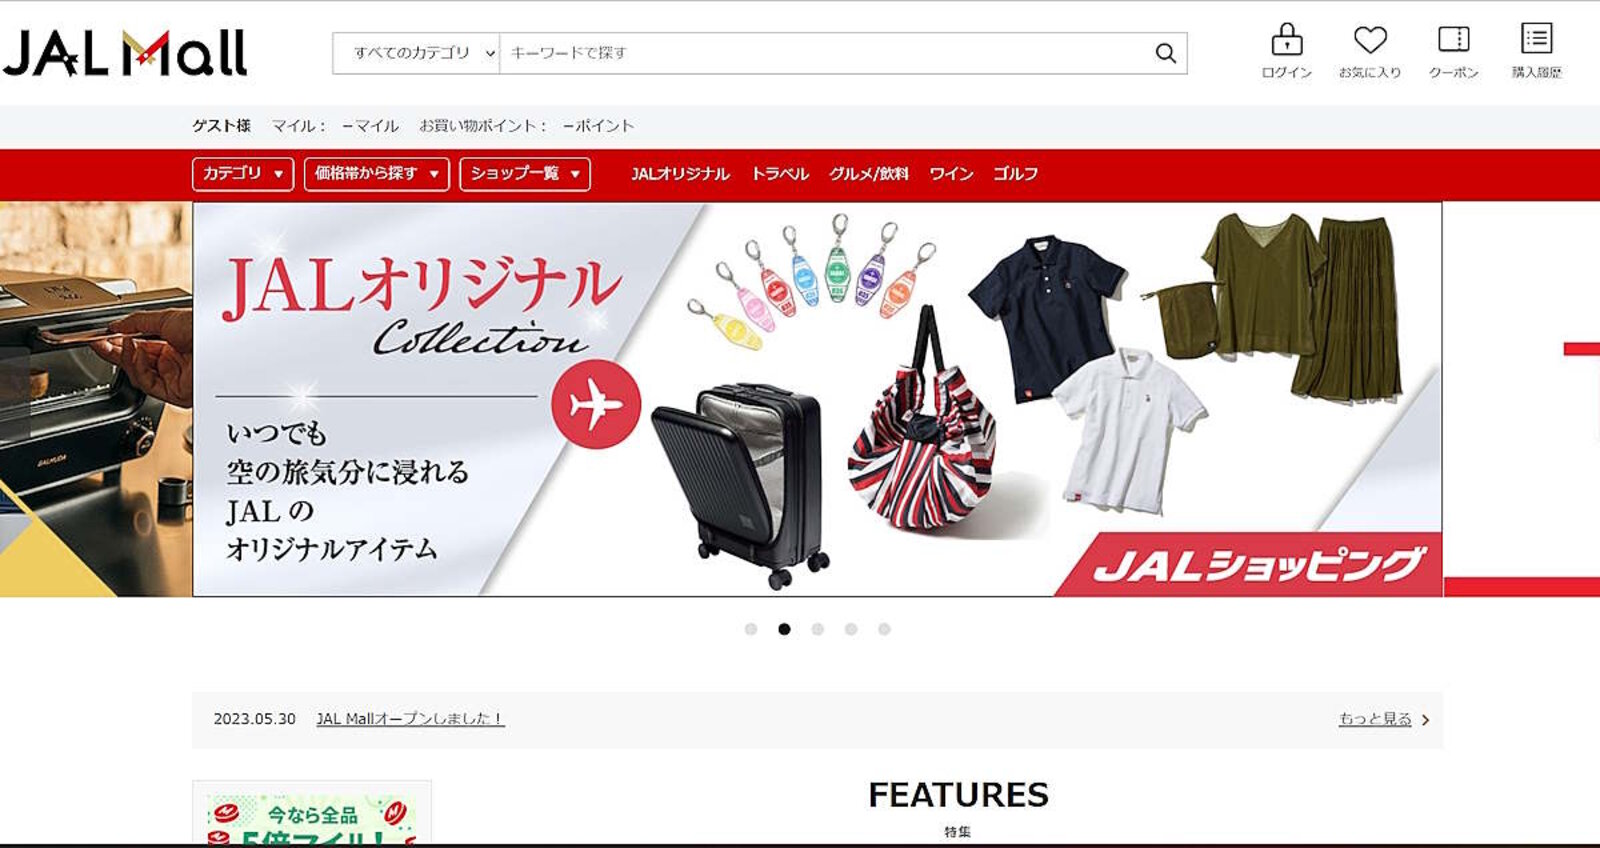 日本航空グループが始めたECモール「JAL Mall（ジャルモール）」とは | ネットショップ担当者フォーラム